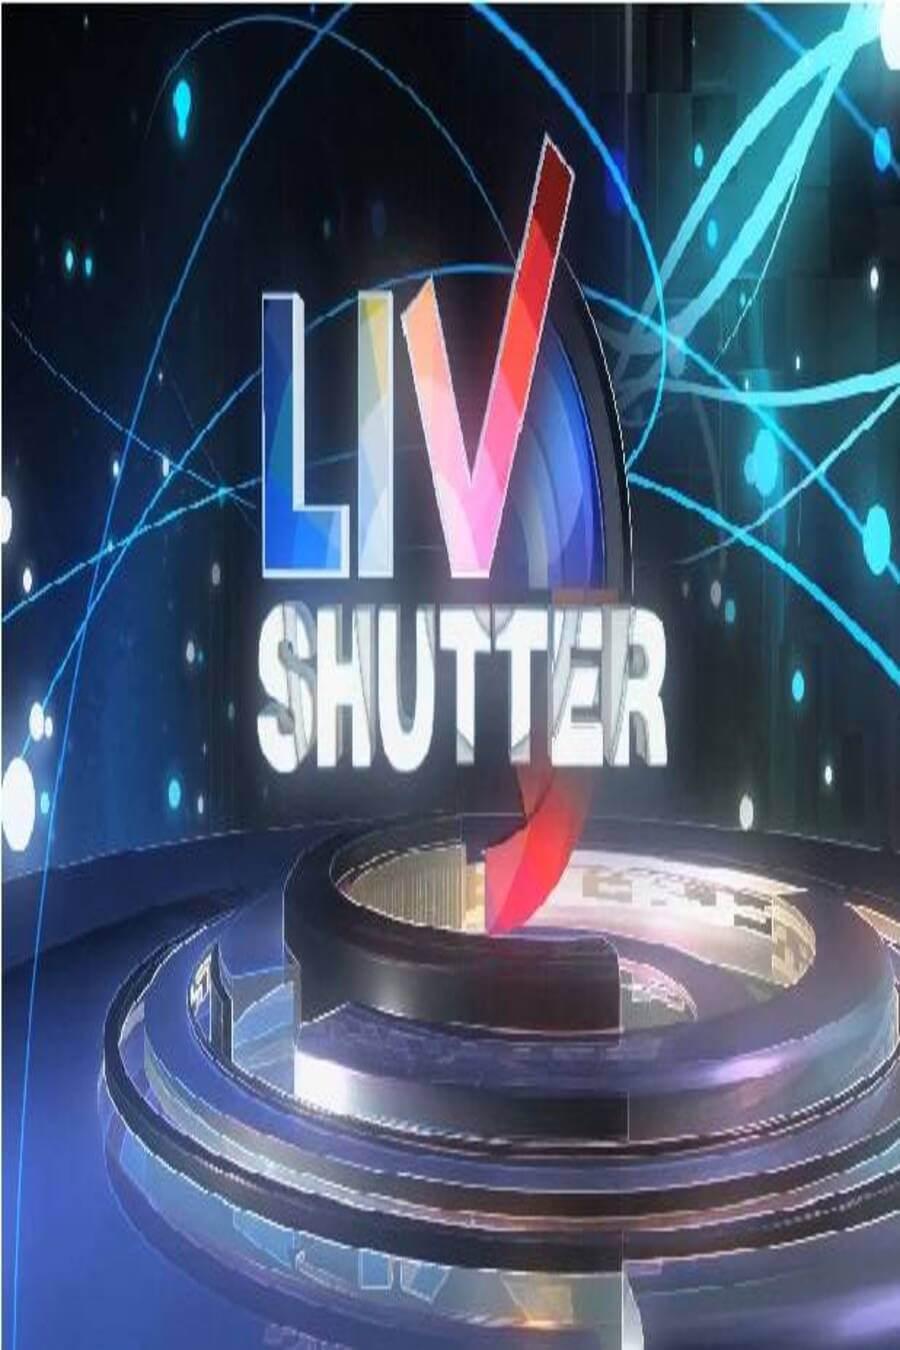 TV ratings for Livshutter in New Zealand. SonyLIV TV series